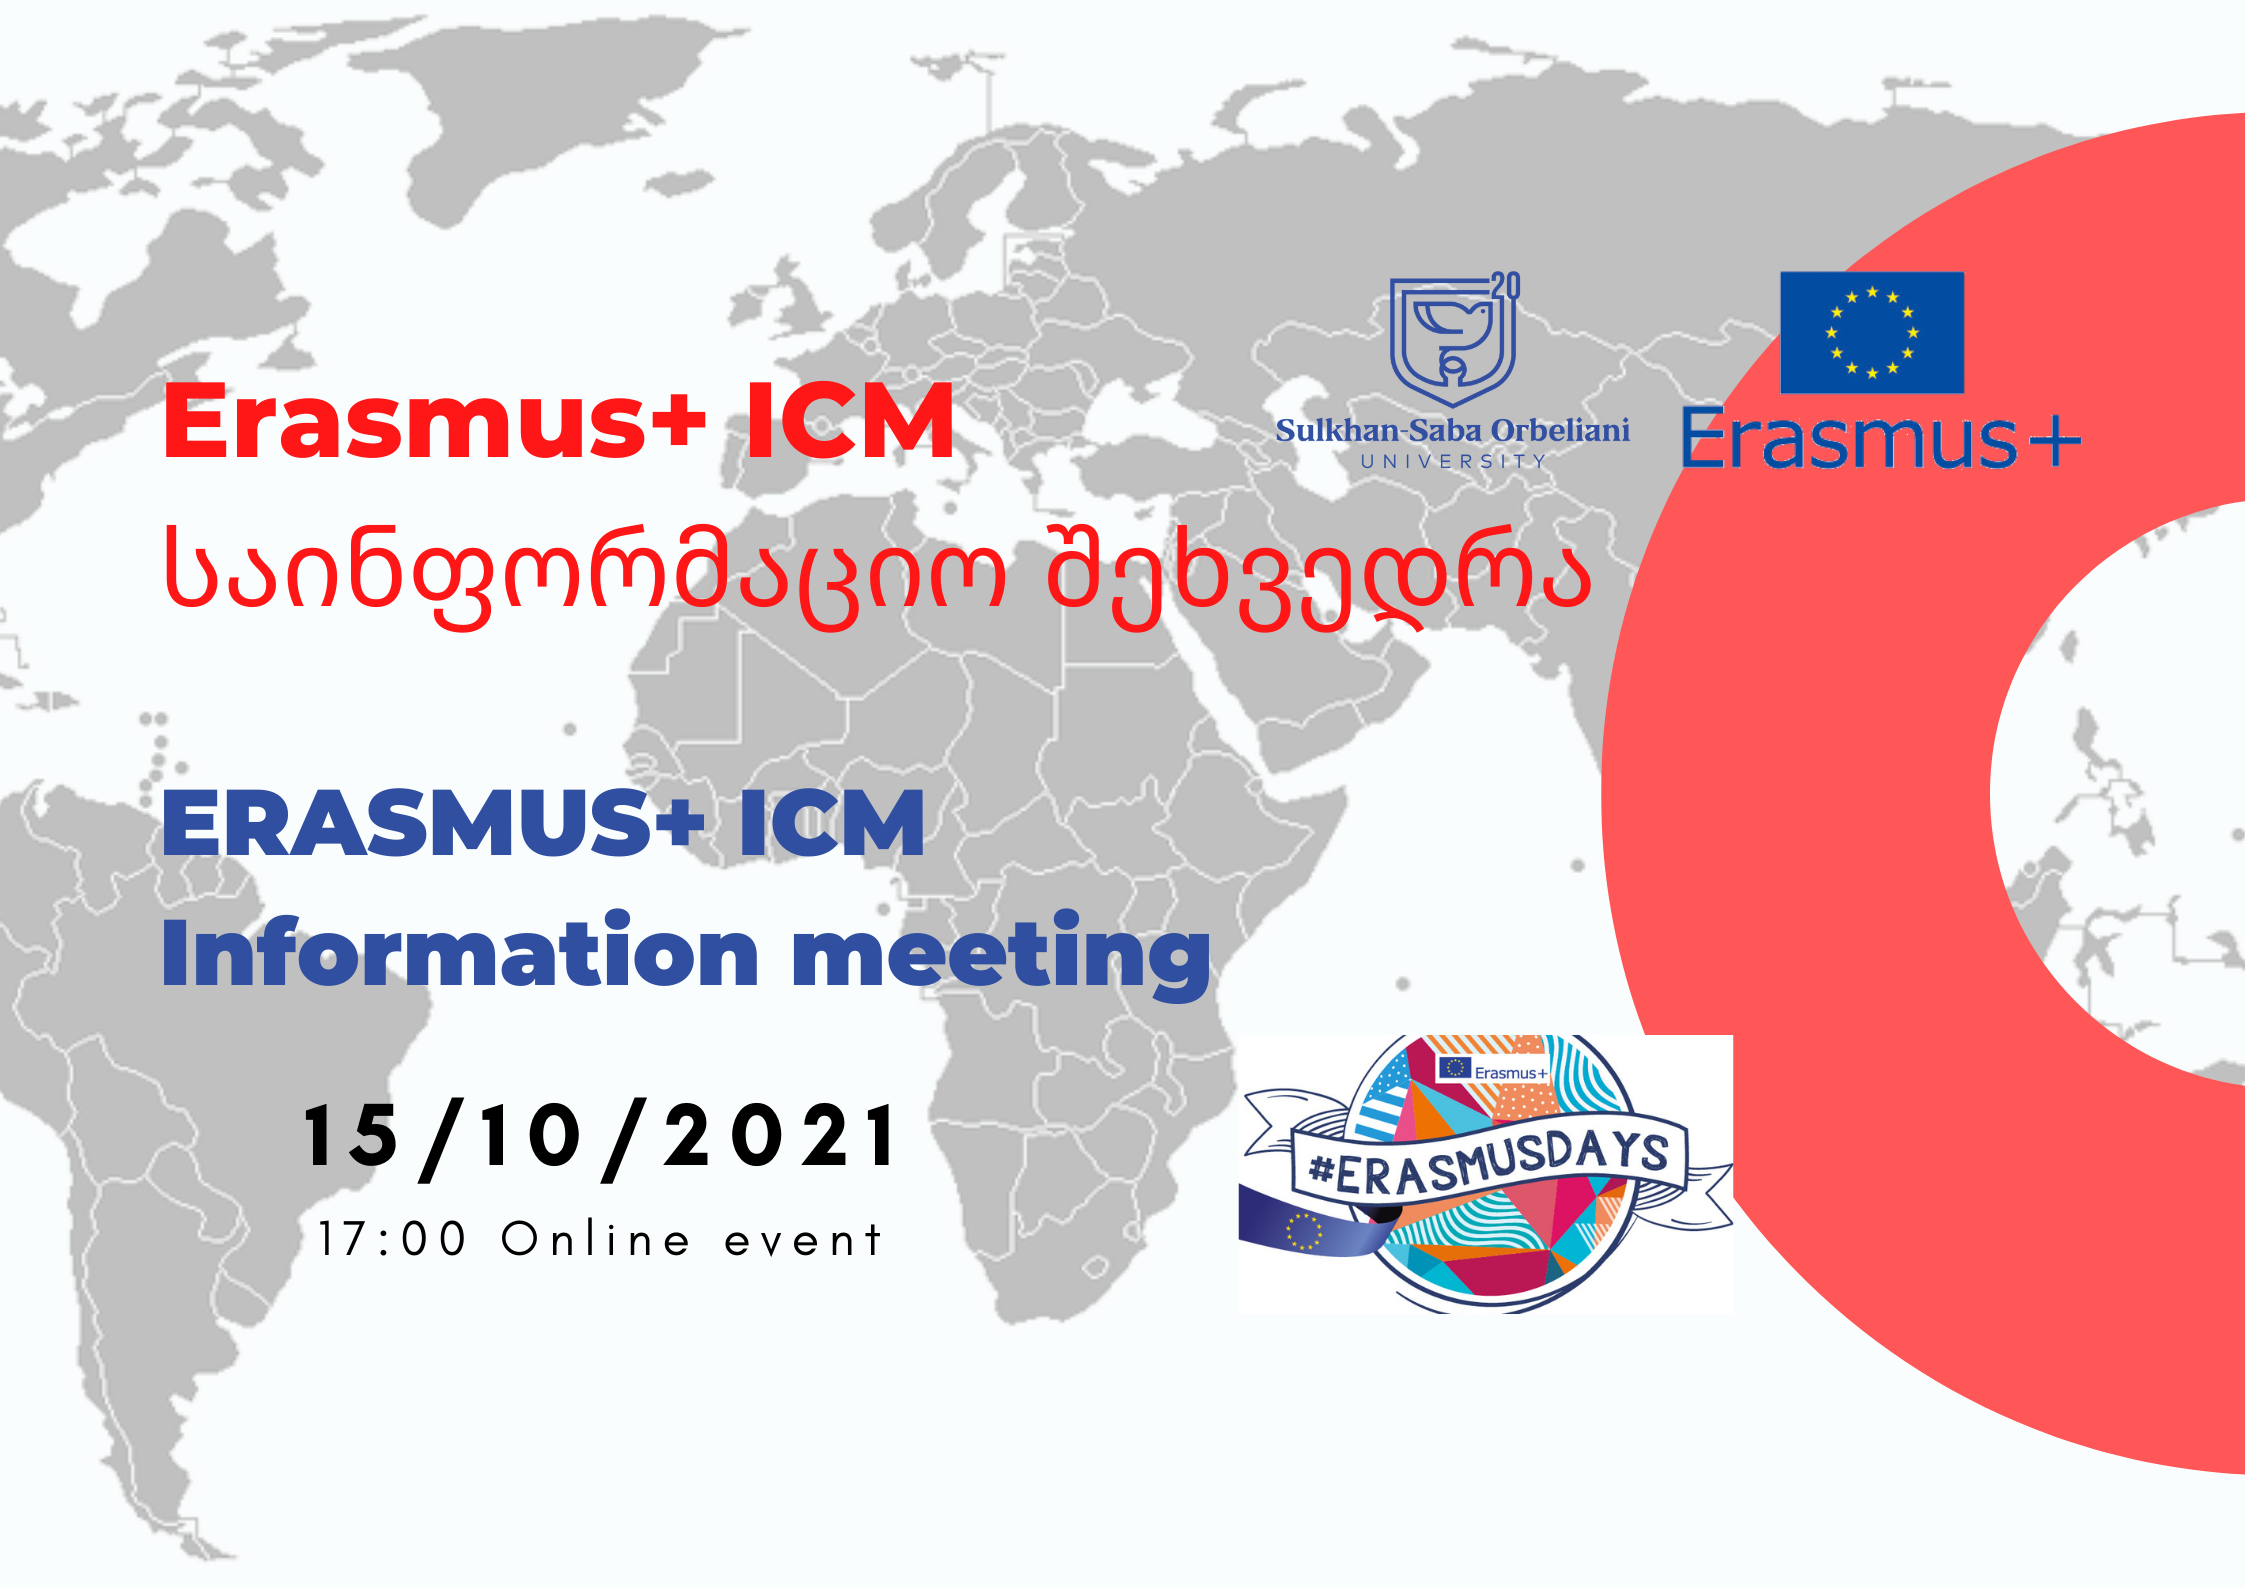 Erasmus+ Information Meeting